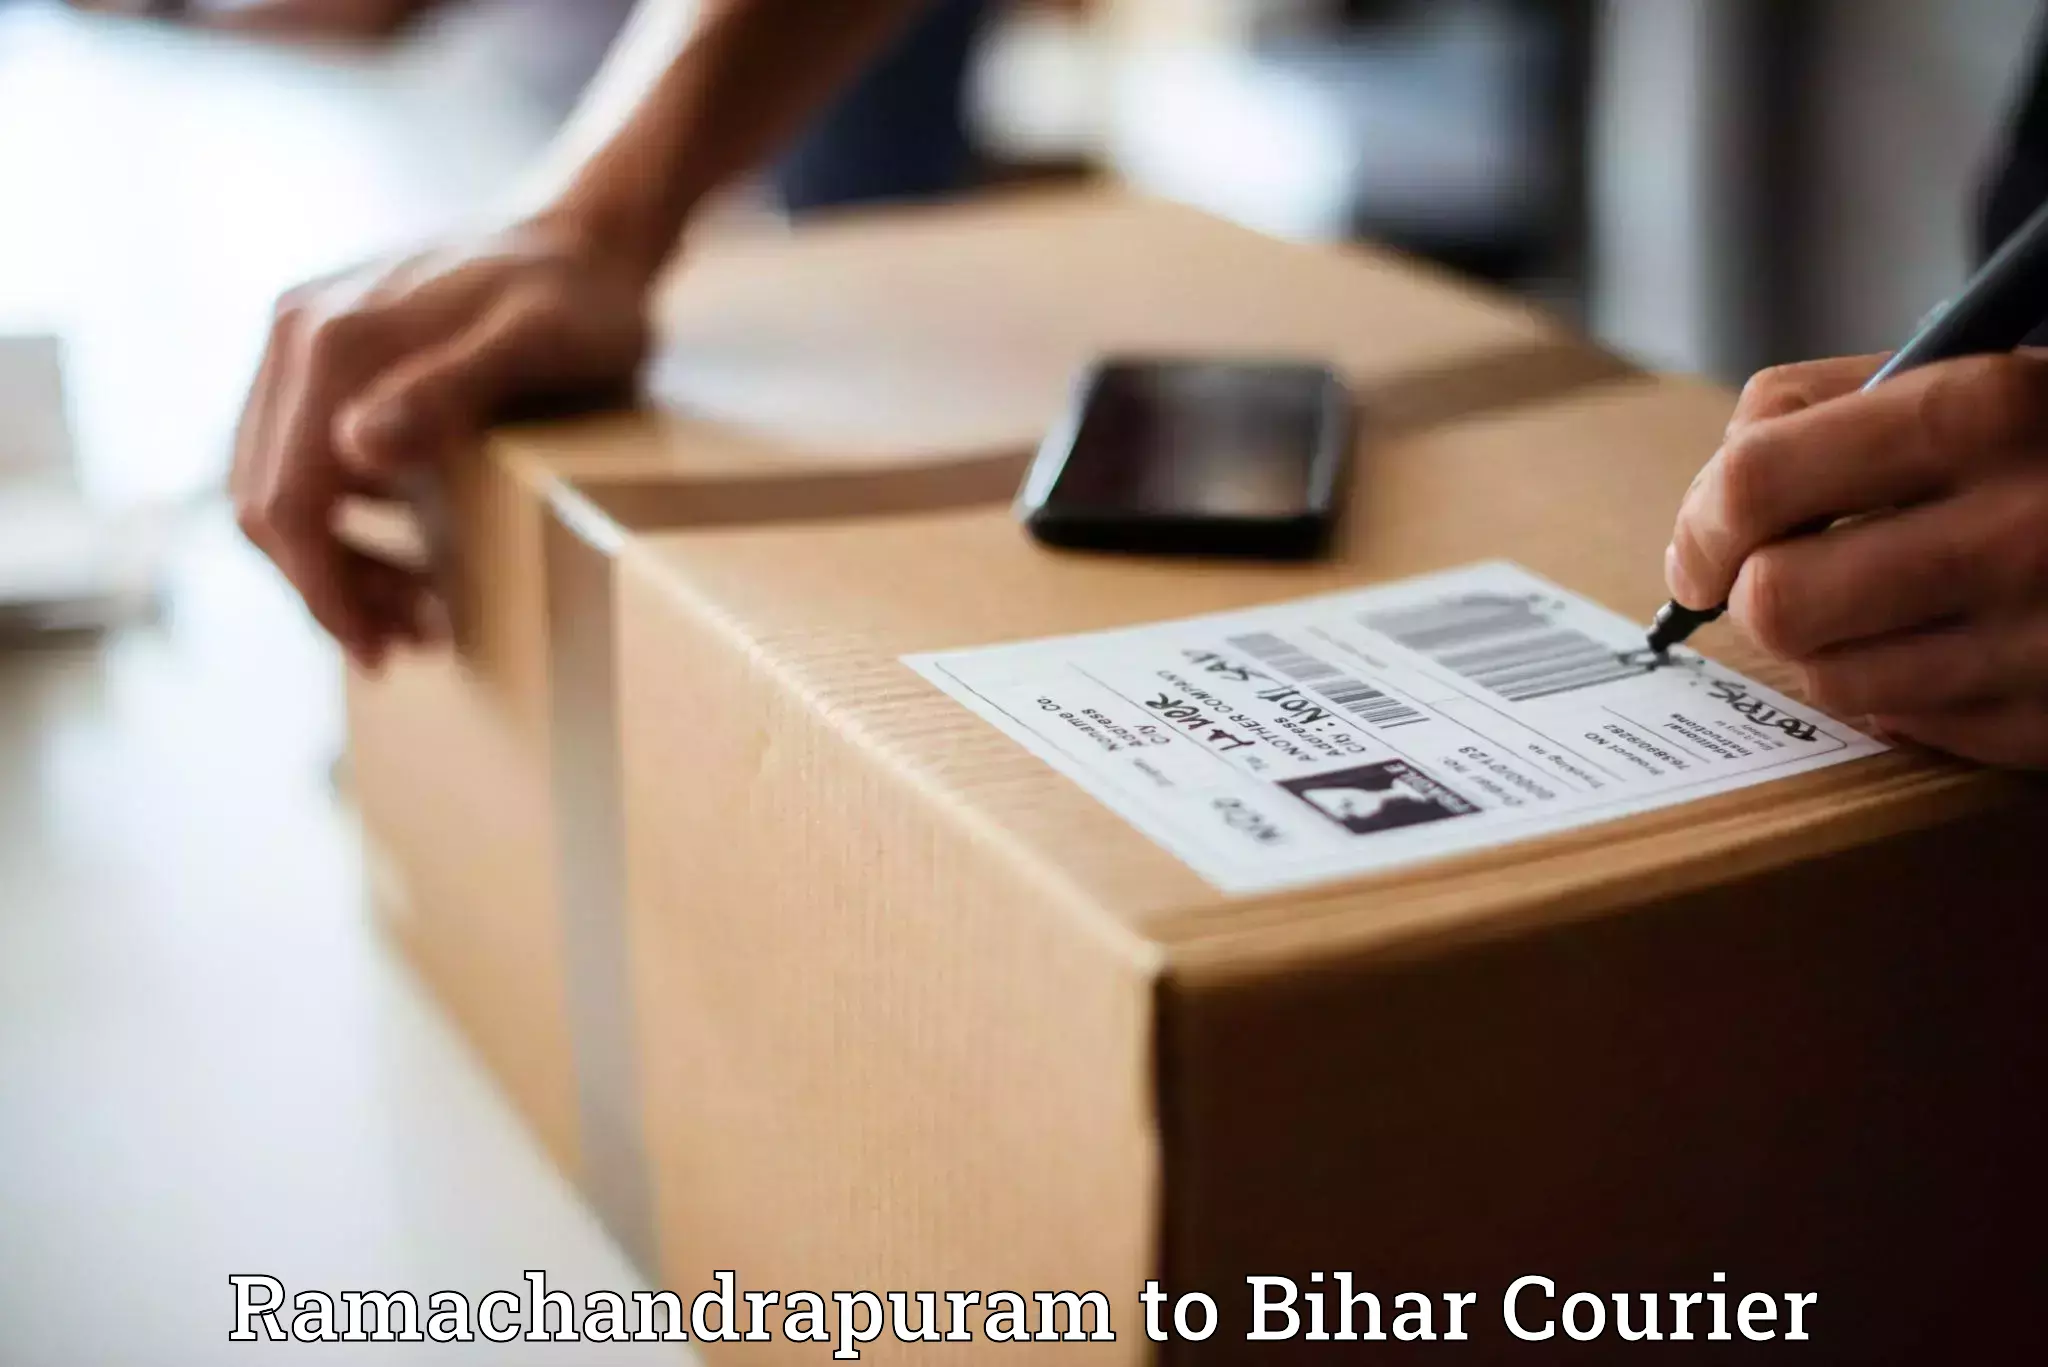 Door-to-door freight service Ramachandrapuram to Bihar